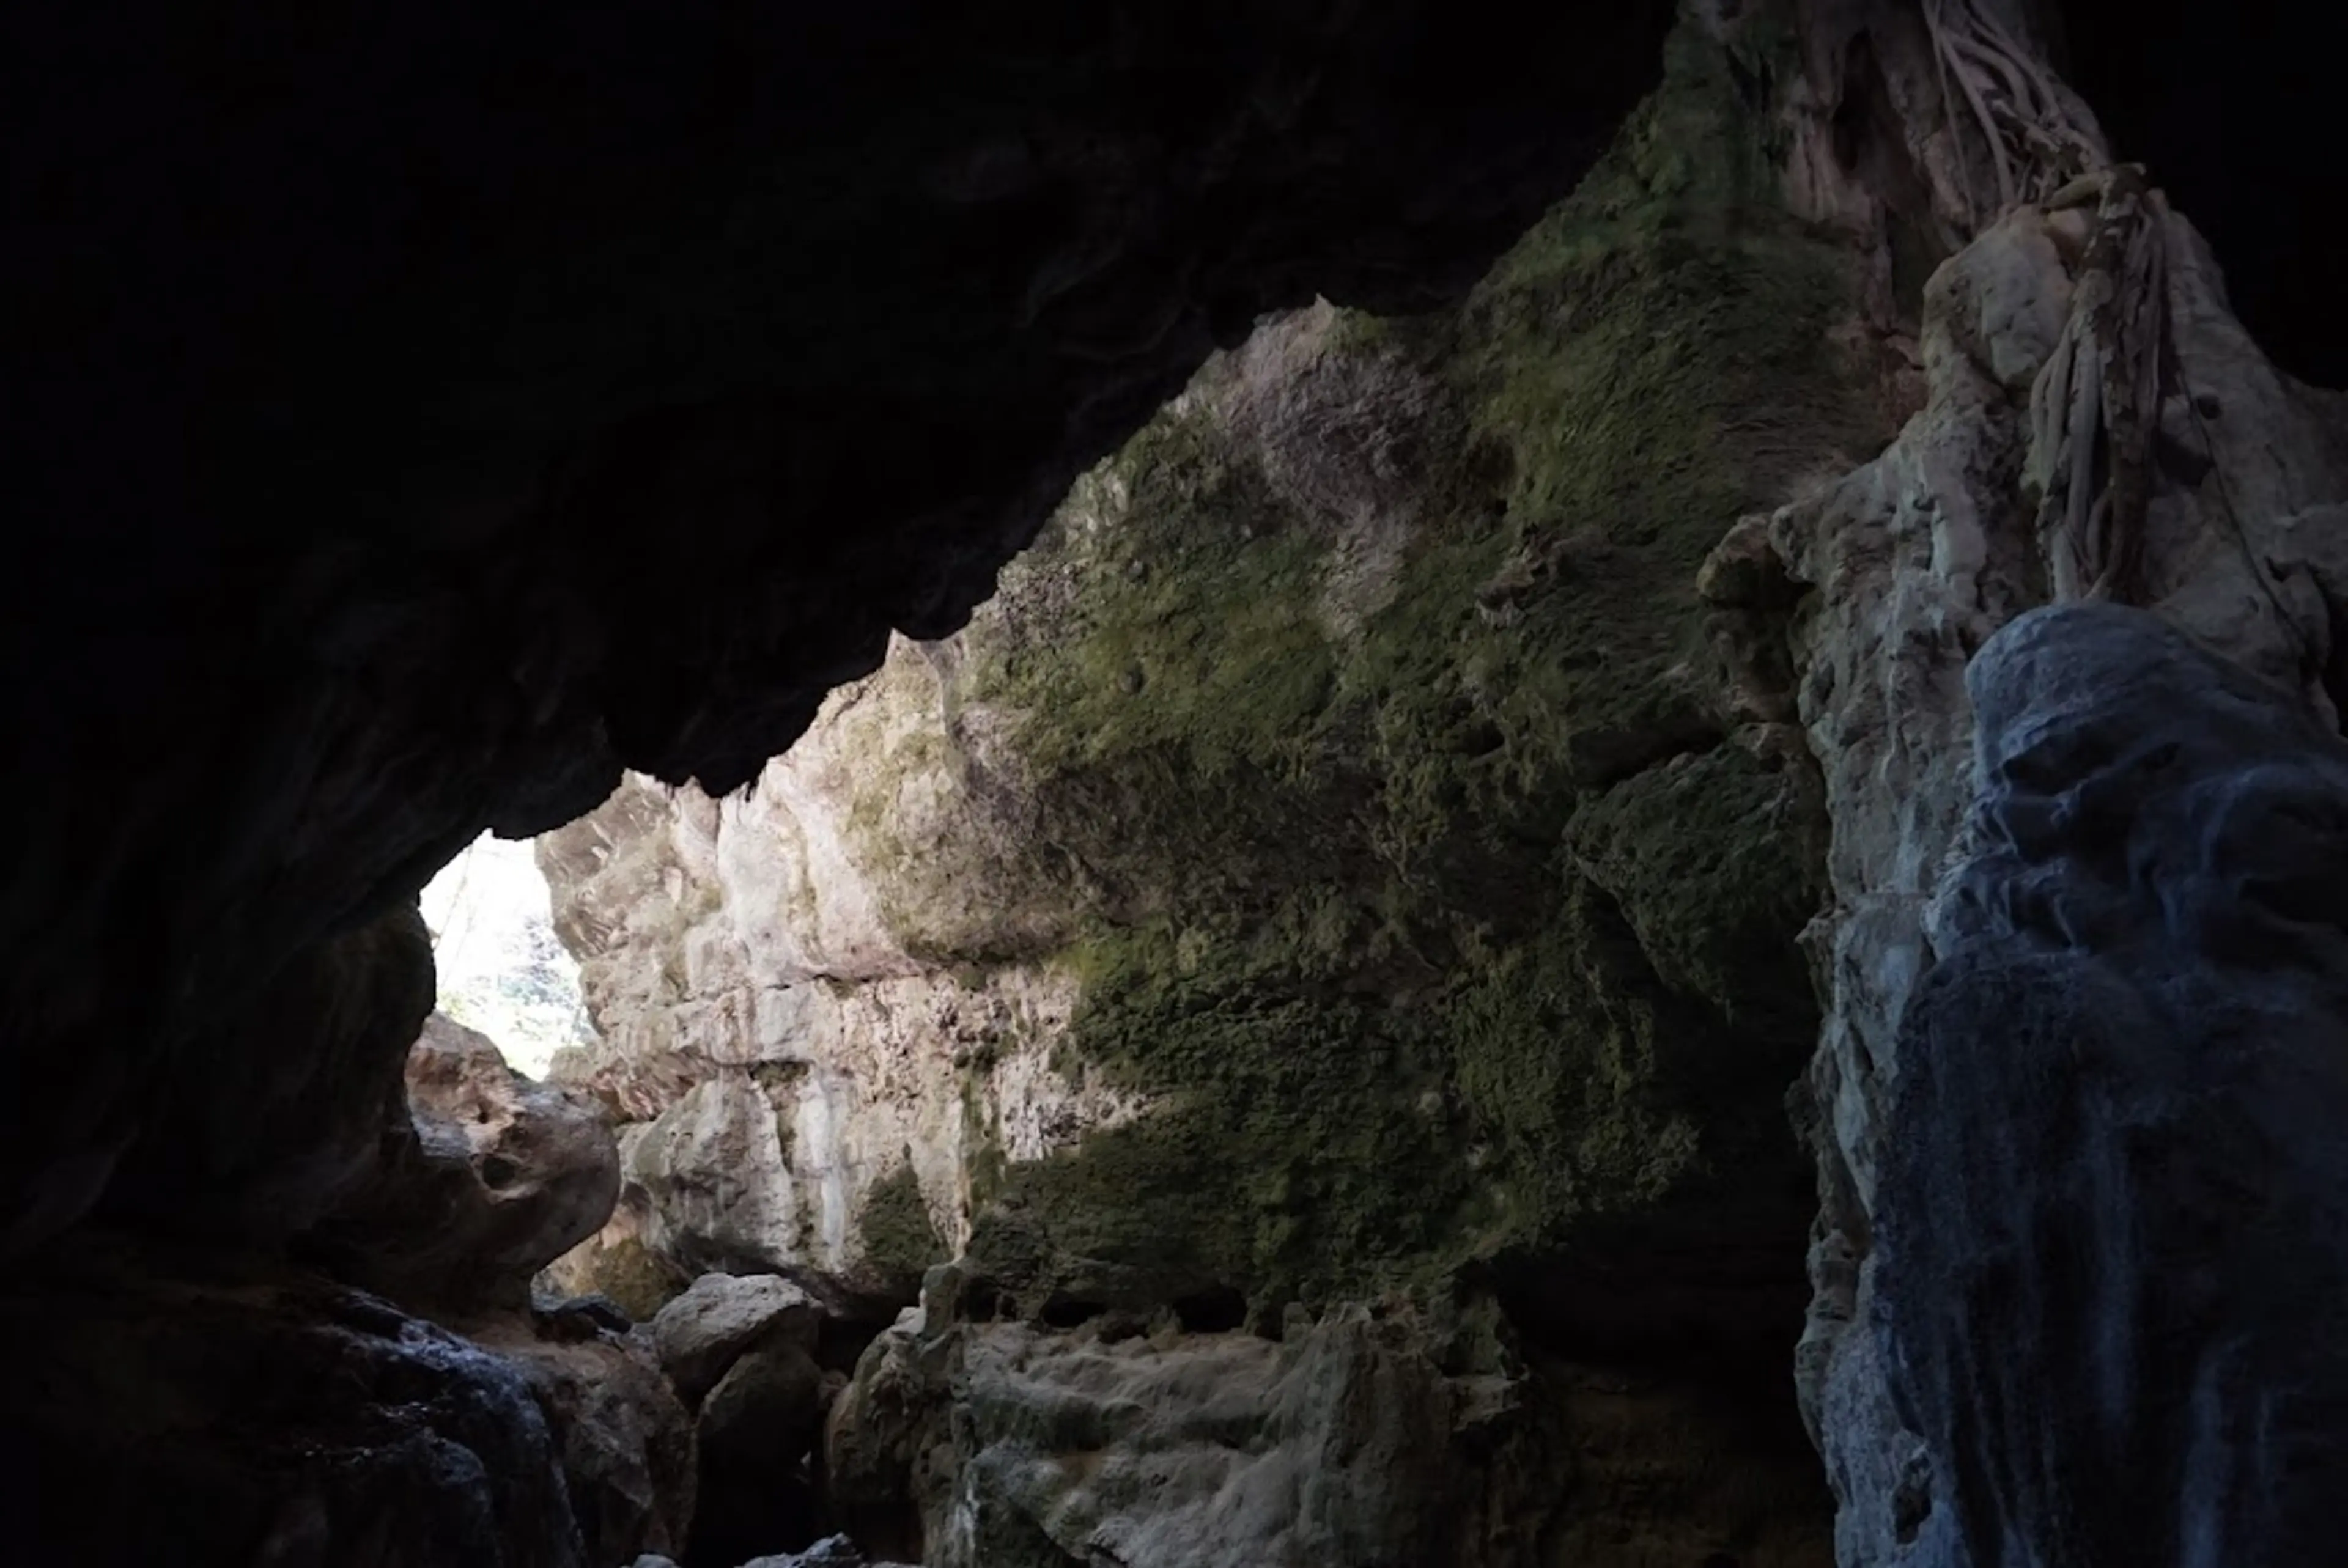 Batu Cermin Cave